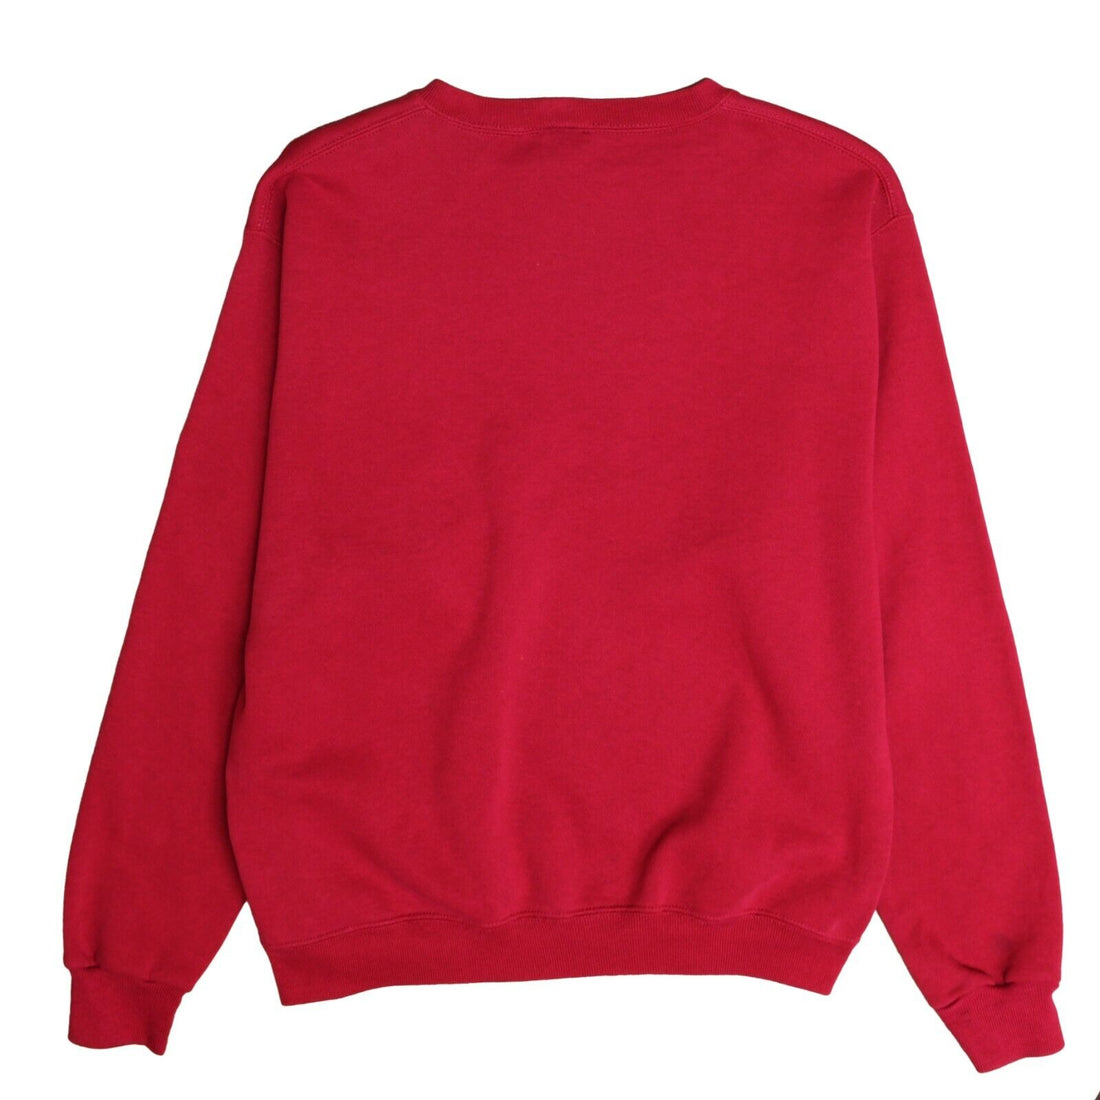 Vintage Harvard Crimson Crest Sweatshirt Crewneck Size Large NCAA